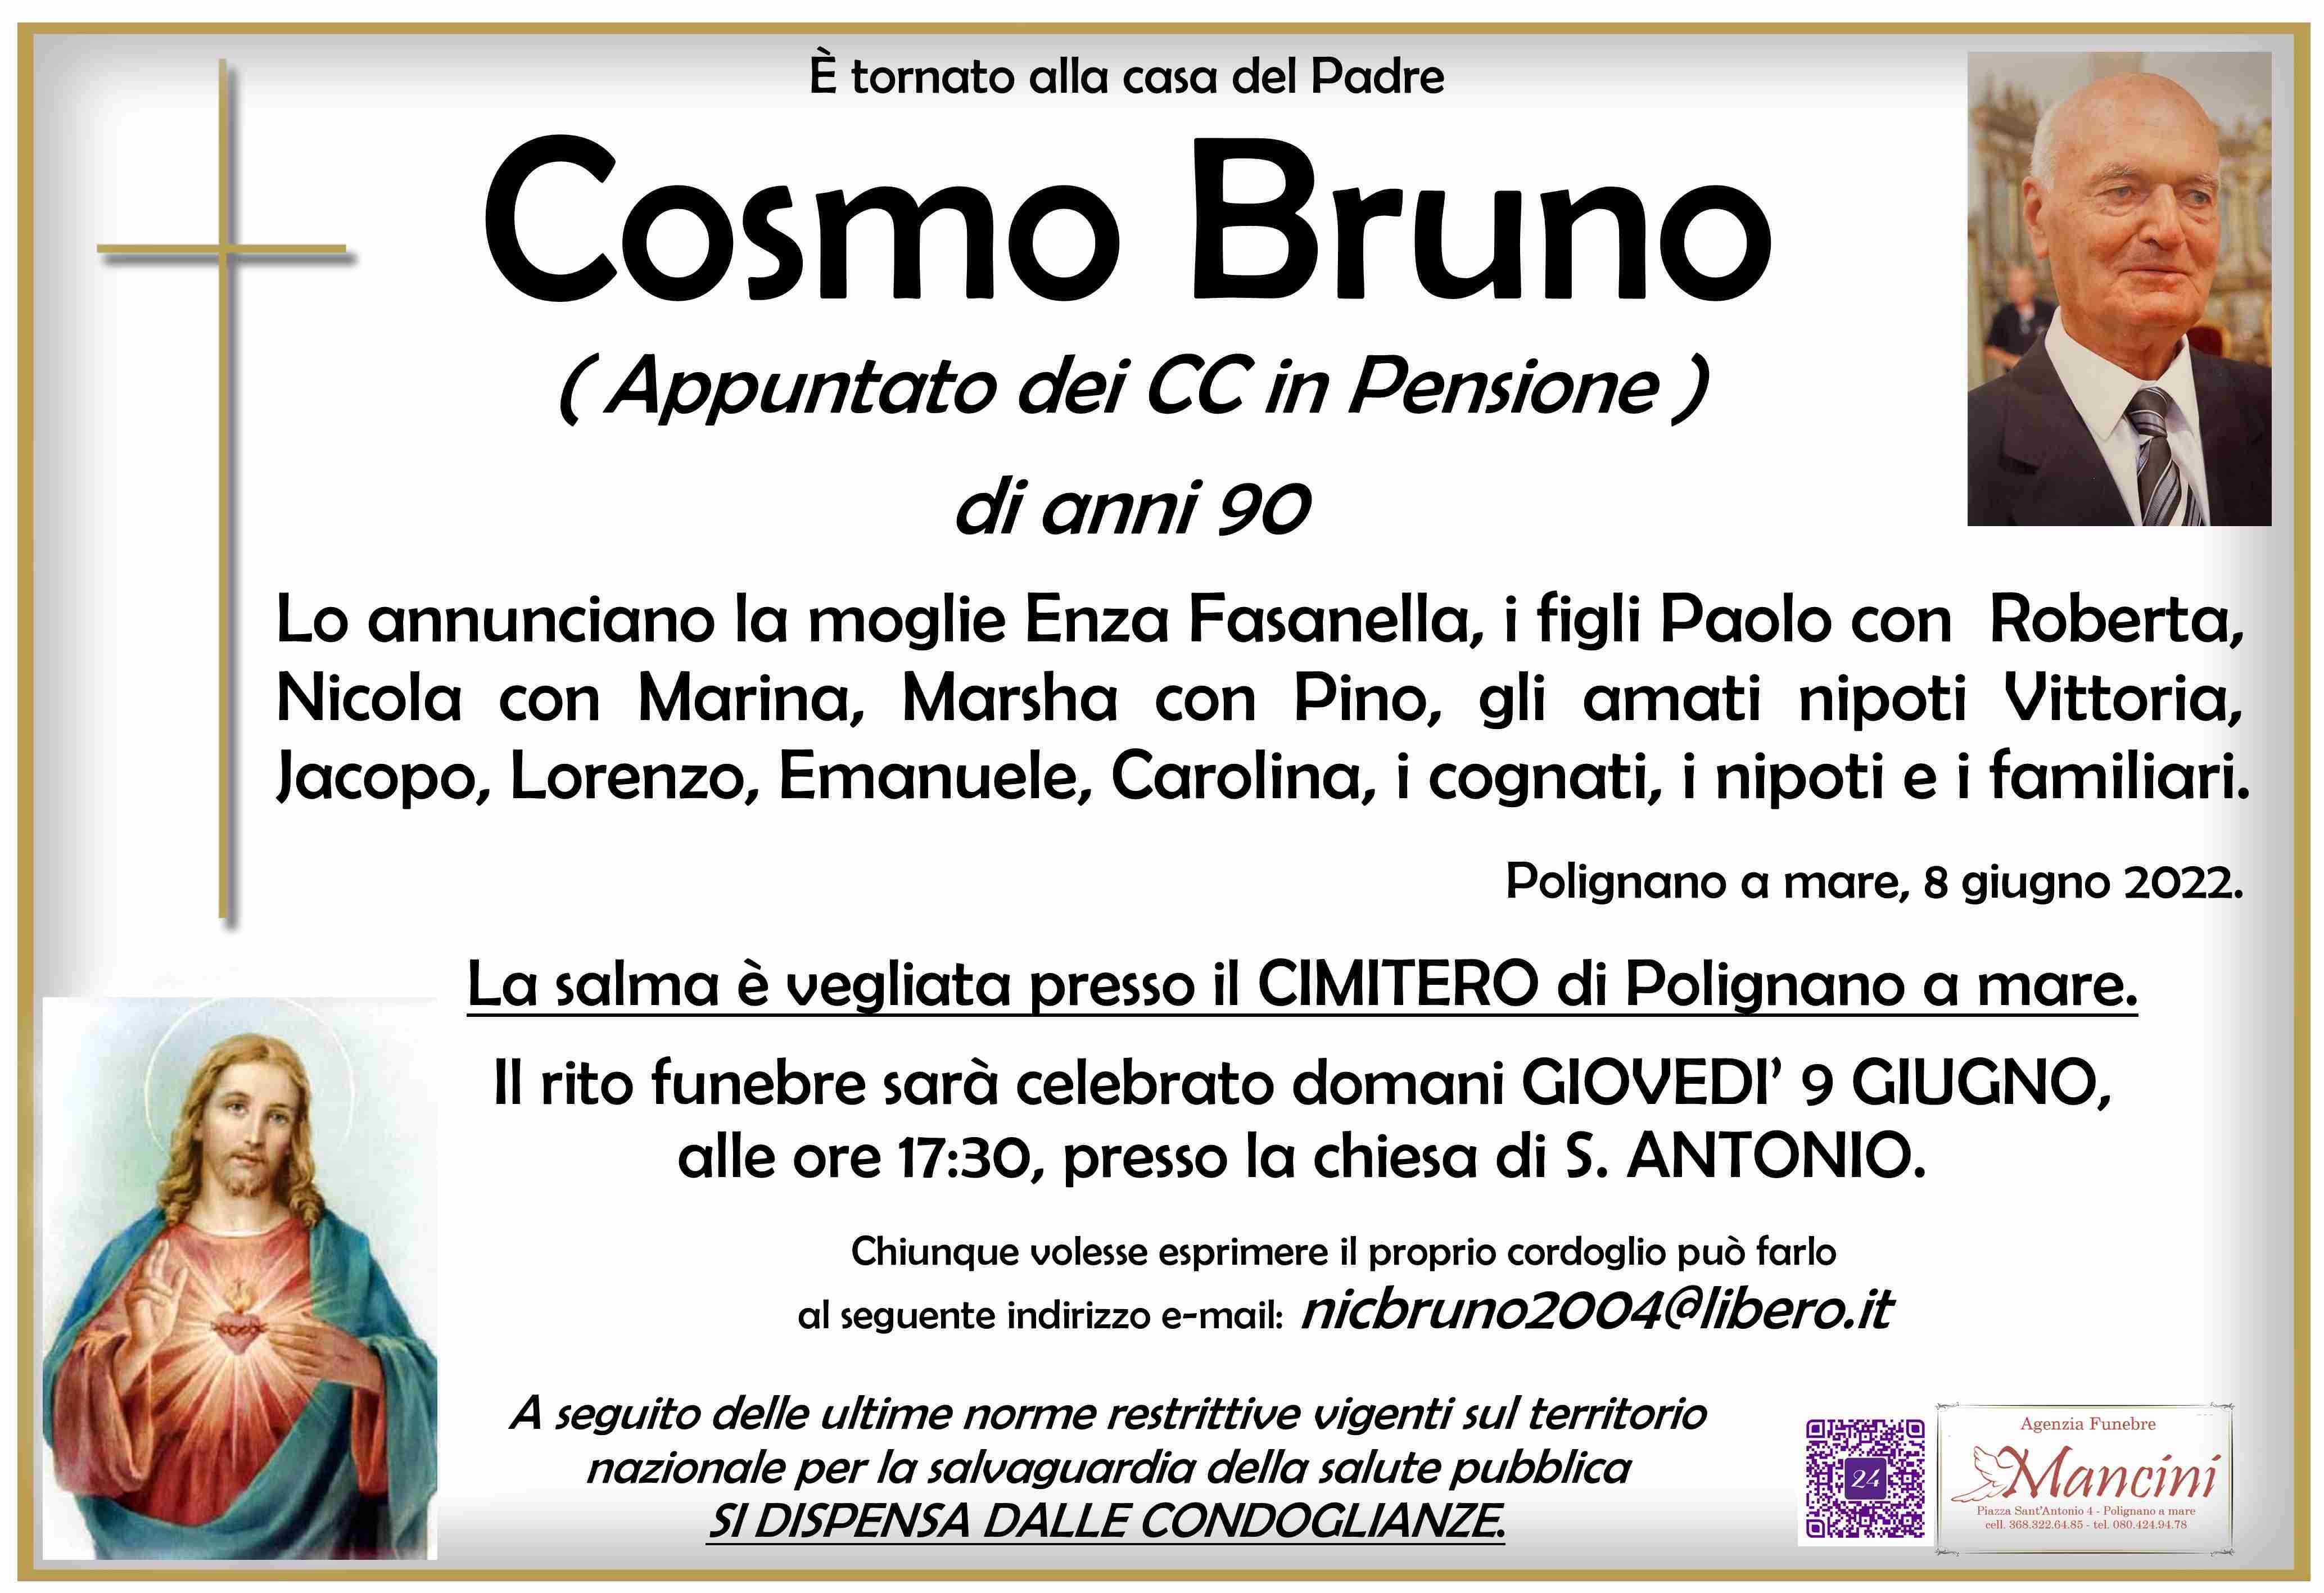 Cosmo Bruno